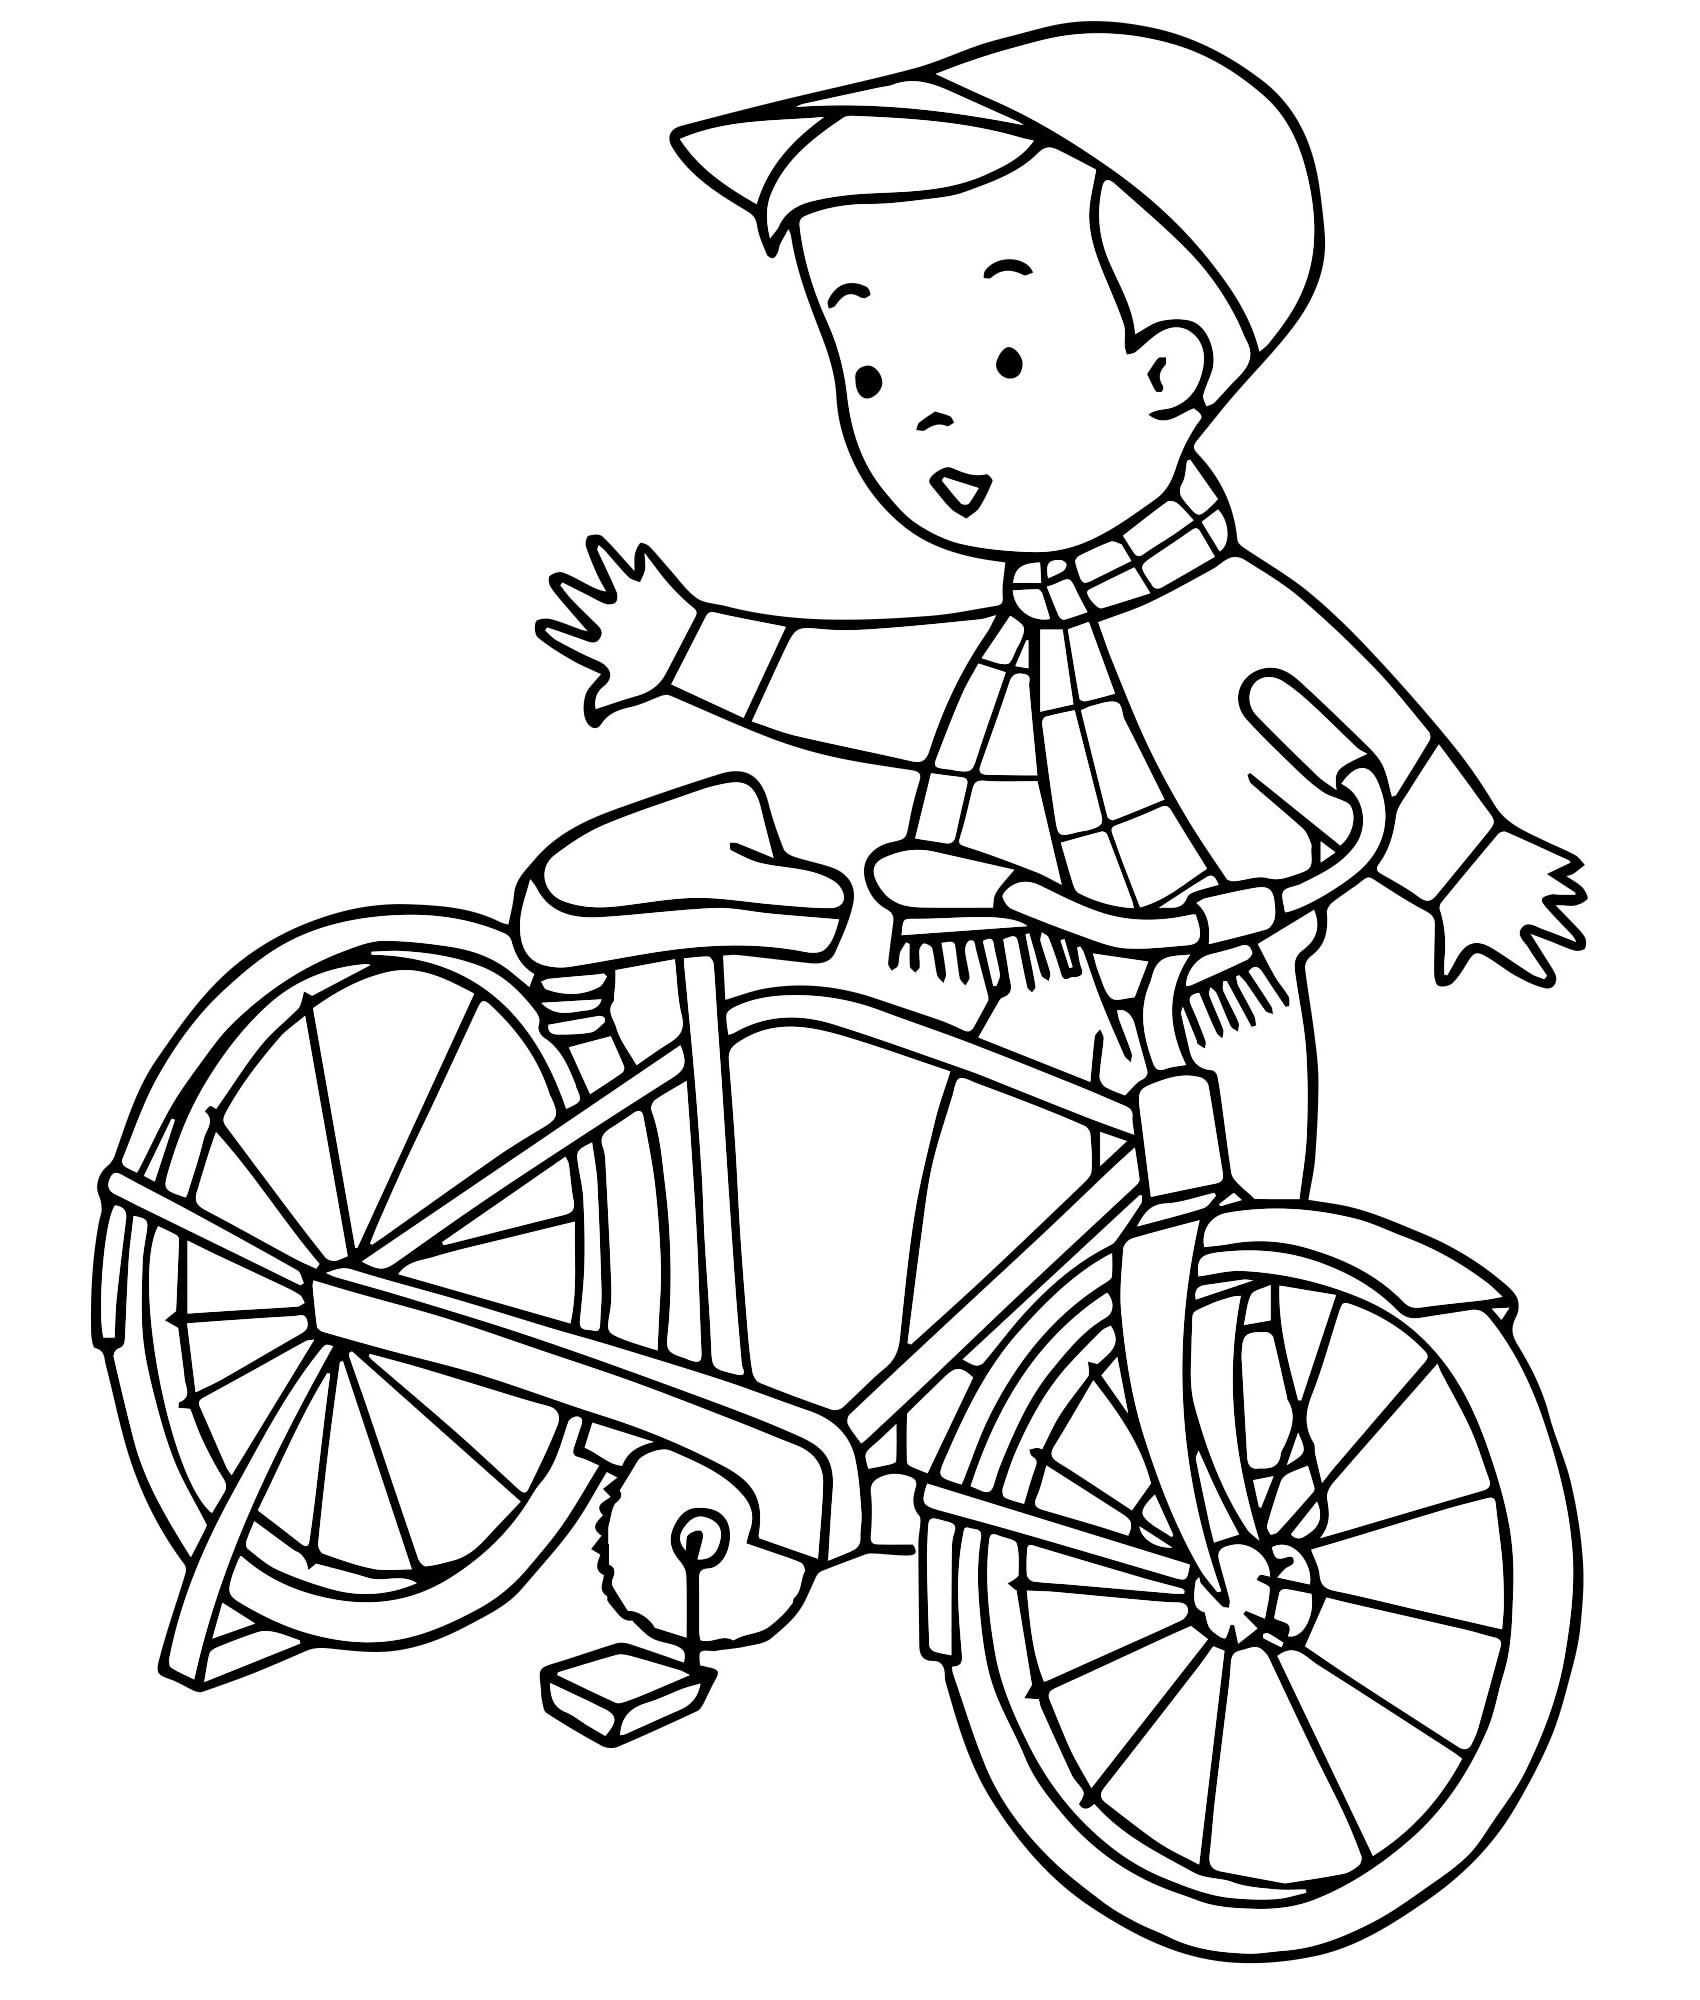 Раскраска Велосипед | Раскраски для детей 3 лет и старше. Раскраски для ребенка трёх лет